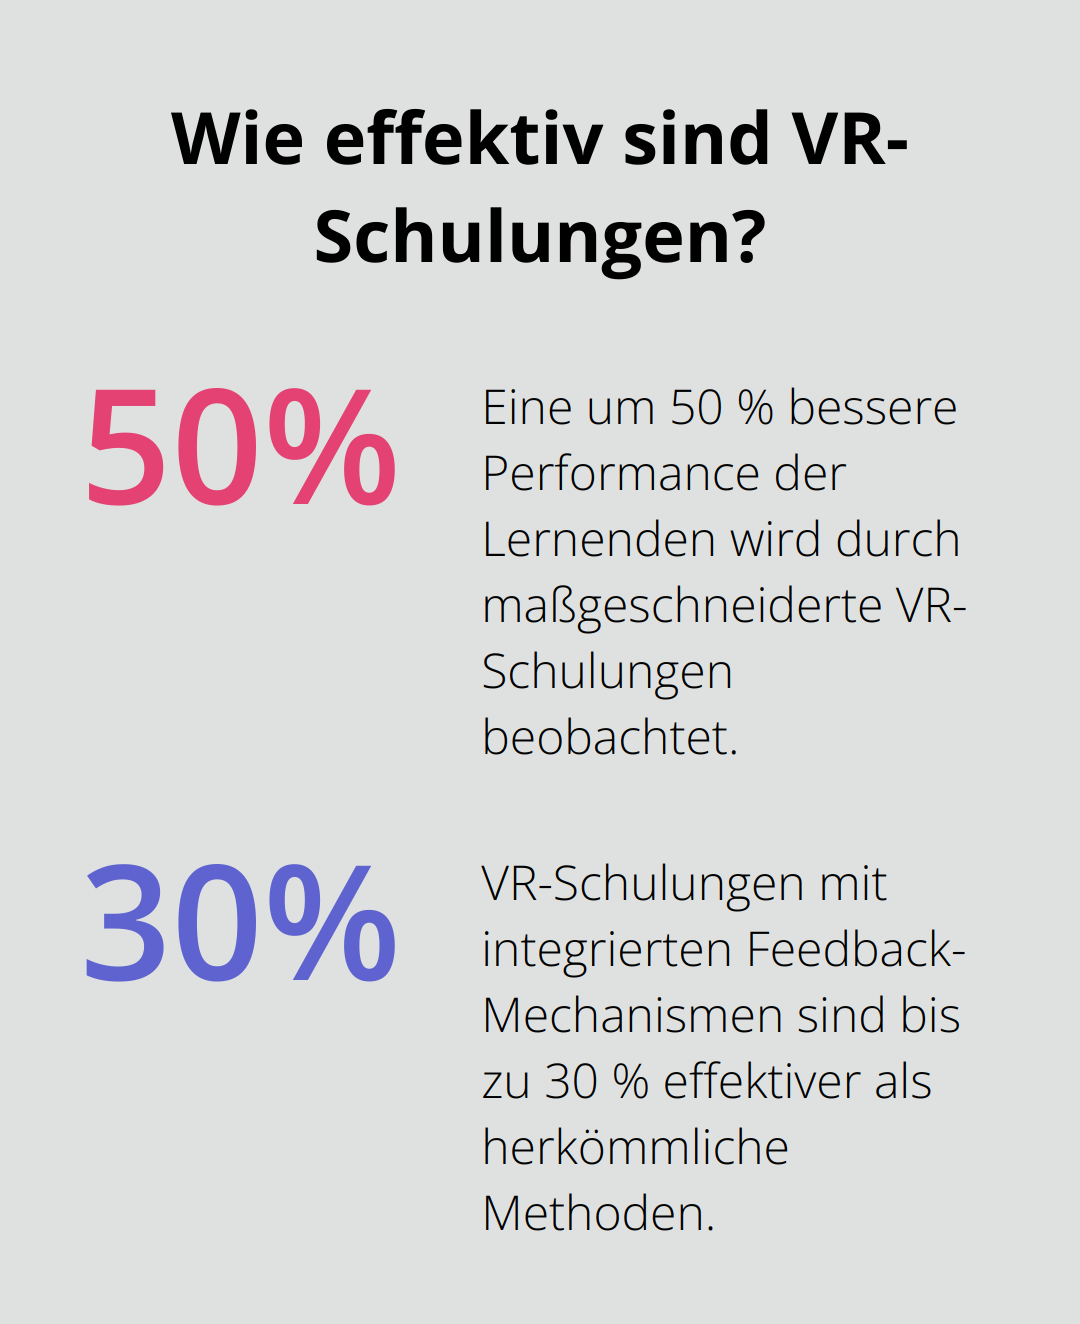 Fact - Wie effektiv sind VR-Schulungen?